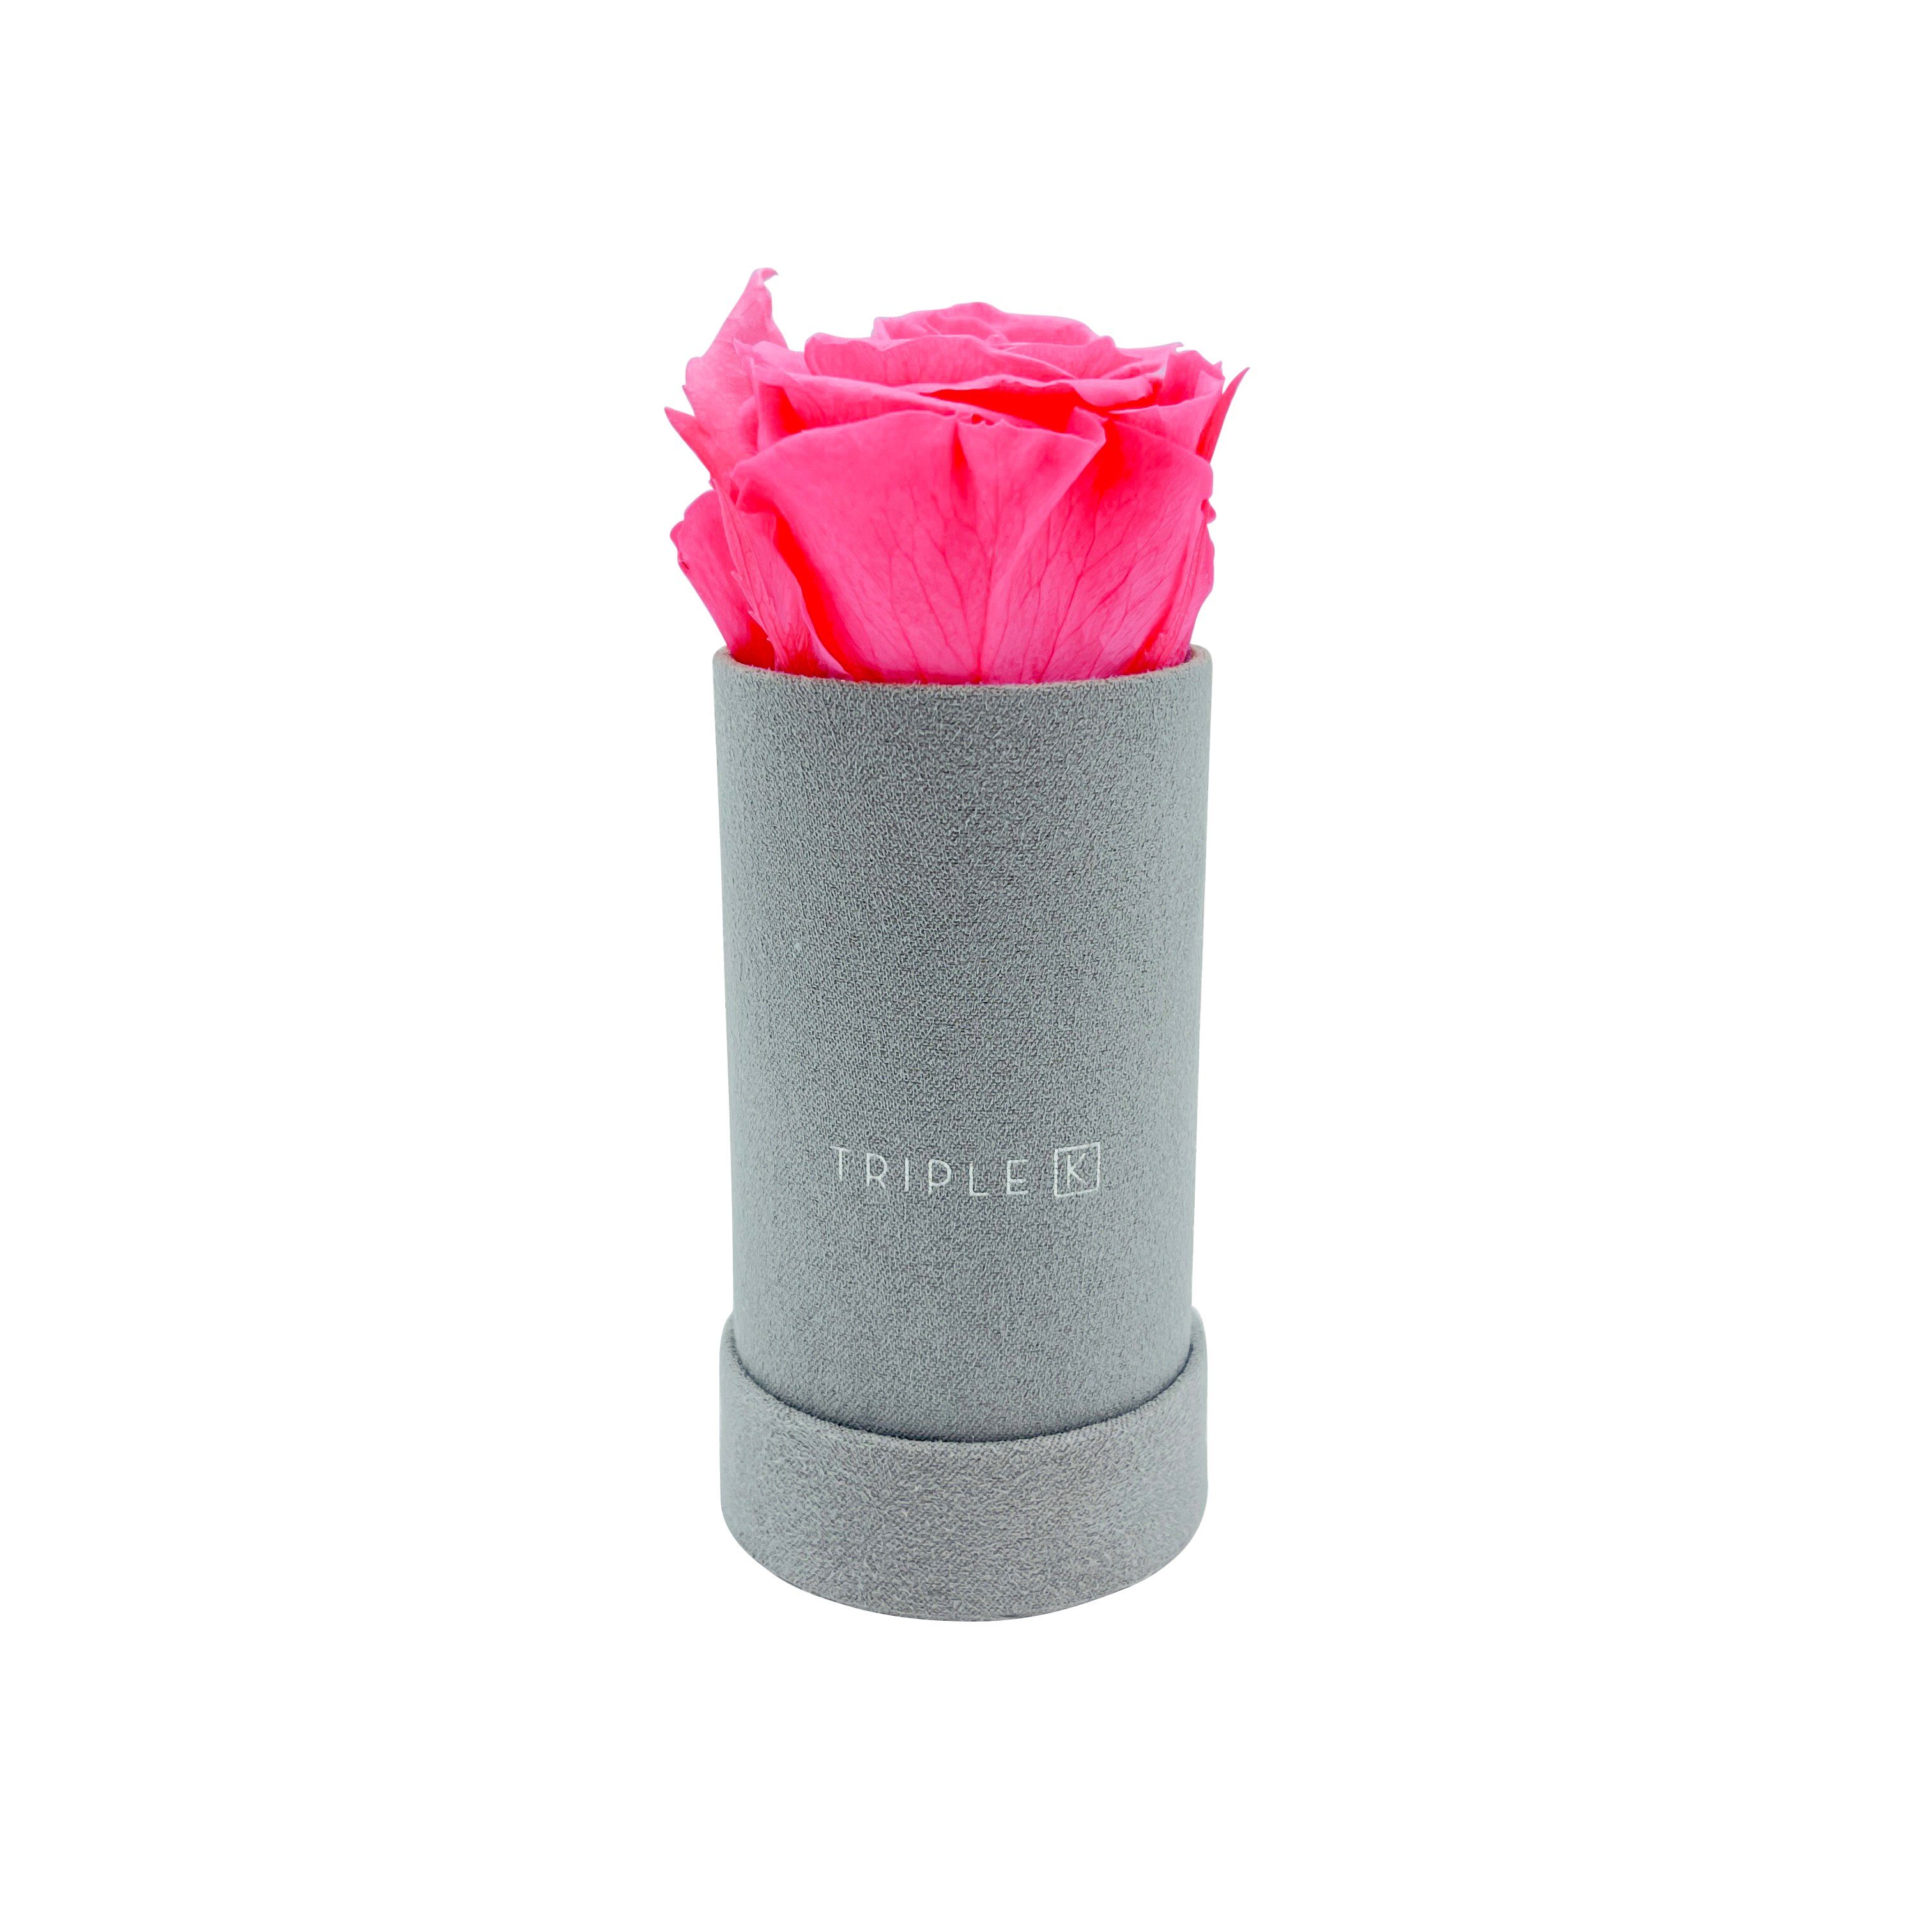 Kunstblume TRIPLE K - Rosenbox Velvet mit Infinity Rosen, bis 3 Jahre Haltbar, Flowerbox mit konservierten Rosen, Blumenbox Inkl. Grußkarte Infinity Rose, TRIPLE K Pink | Kunstblumen